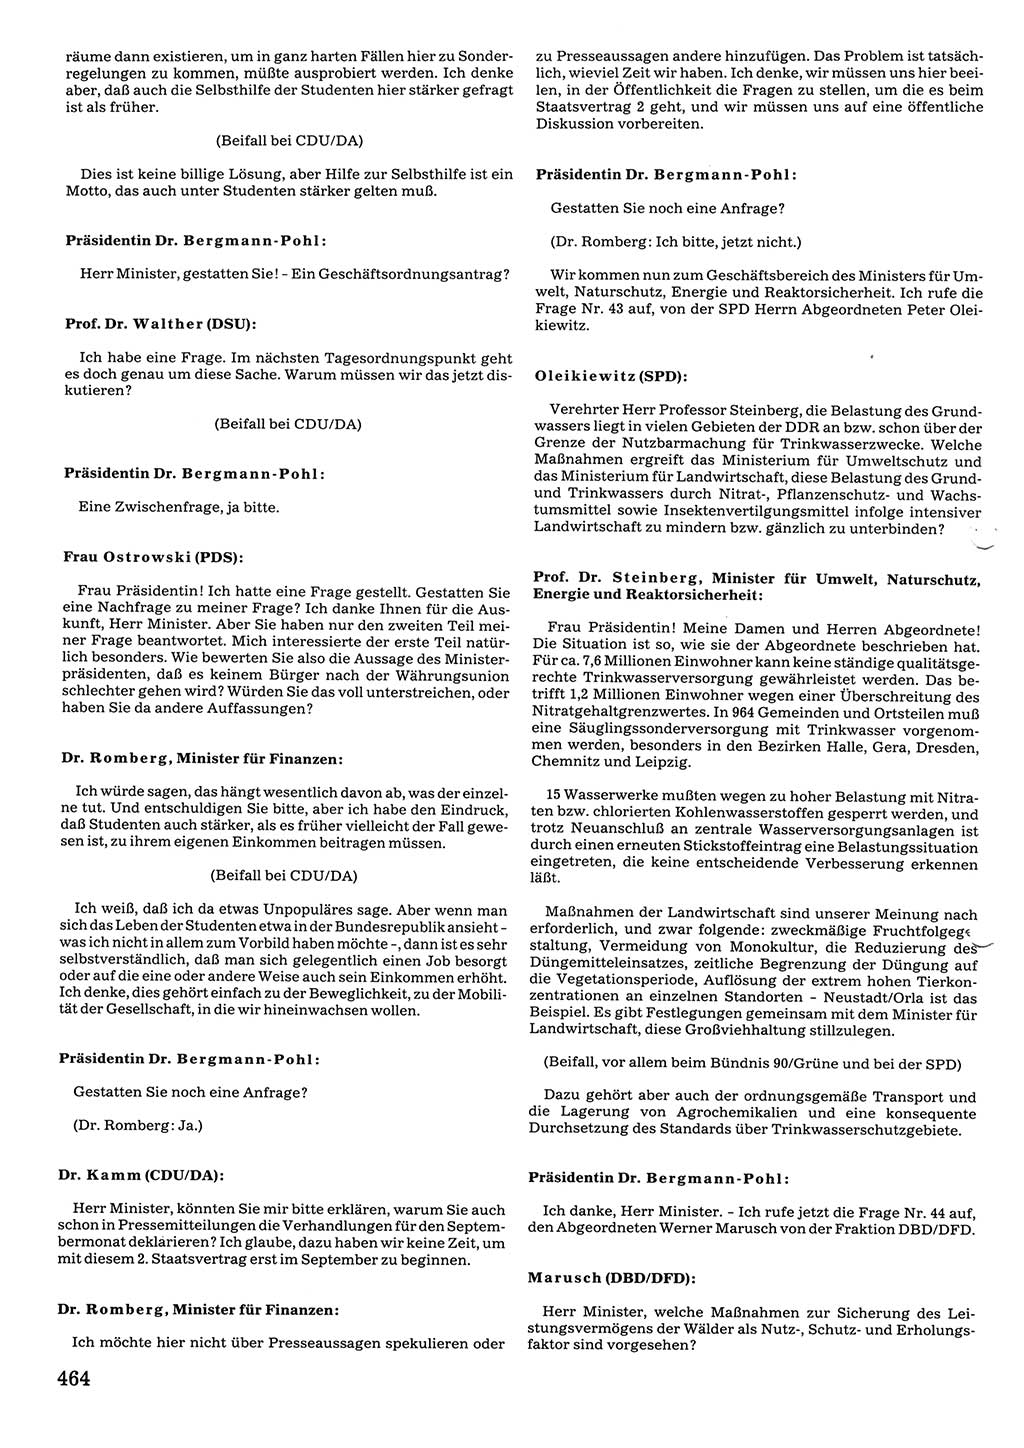 Tagungen der Volkskammer (VK) der Deutschen Demokratischen Republik (DDR), 10. Wahlperiode 1990, Seite 464 (VK. DDR 10. WP. 1990, Prot. Tg. 1-38, 5.4.-2.10.1990, S. 464)